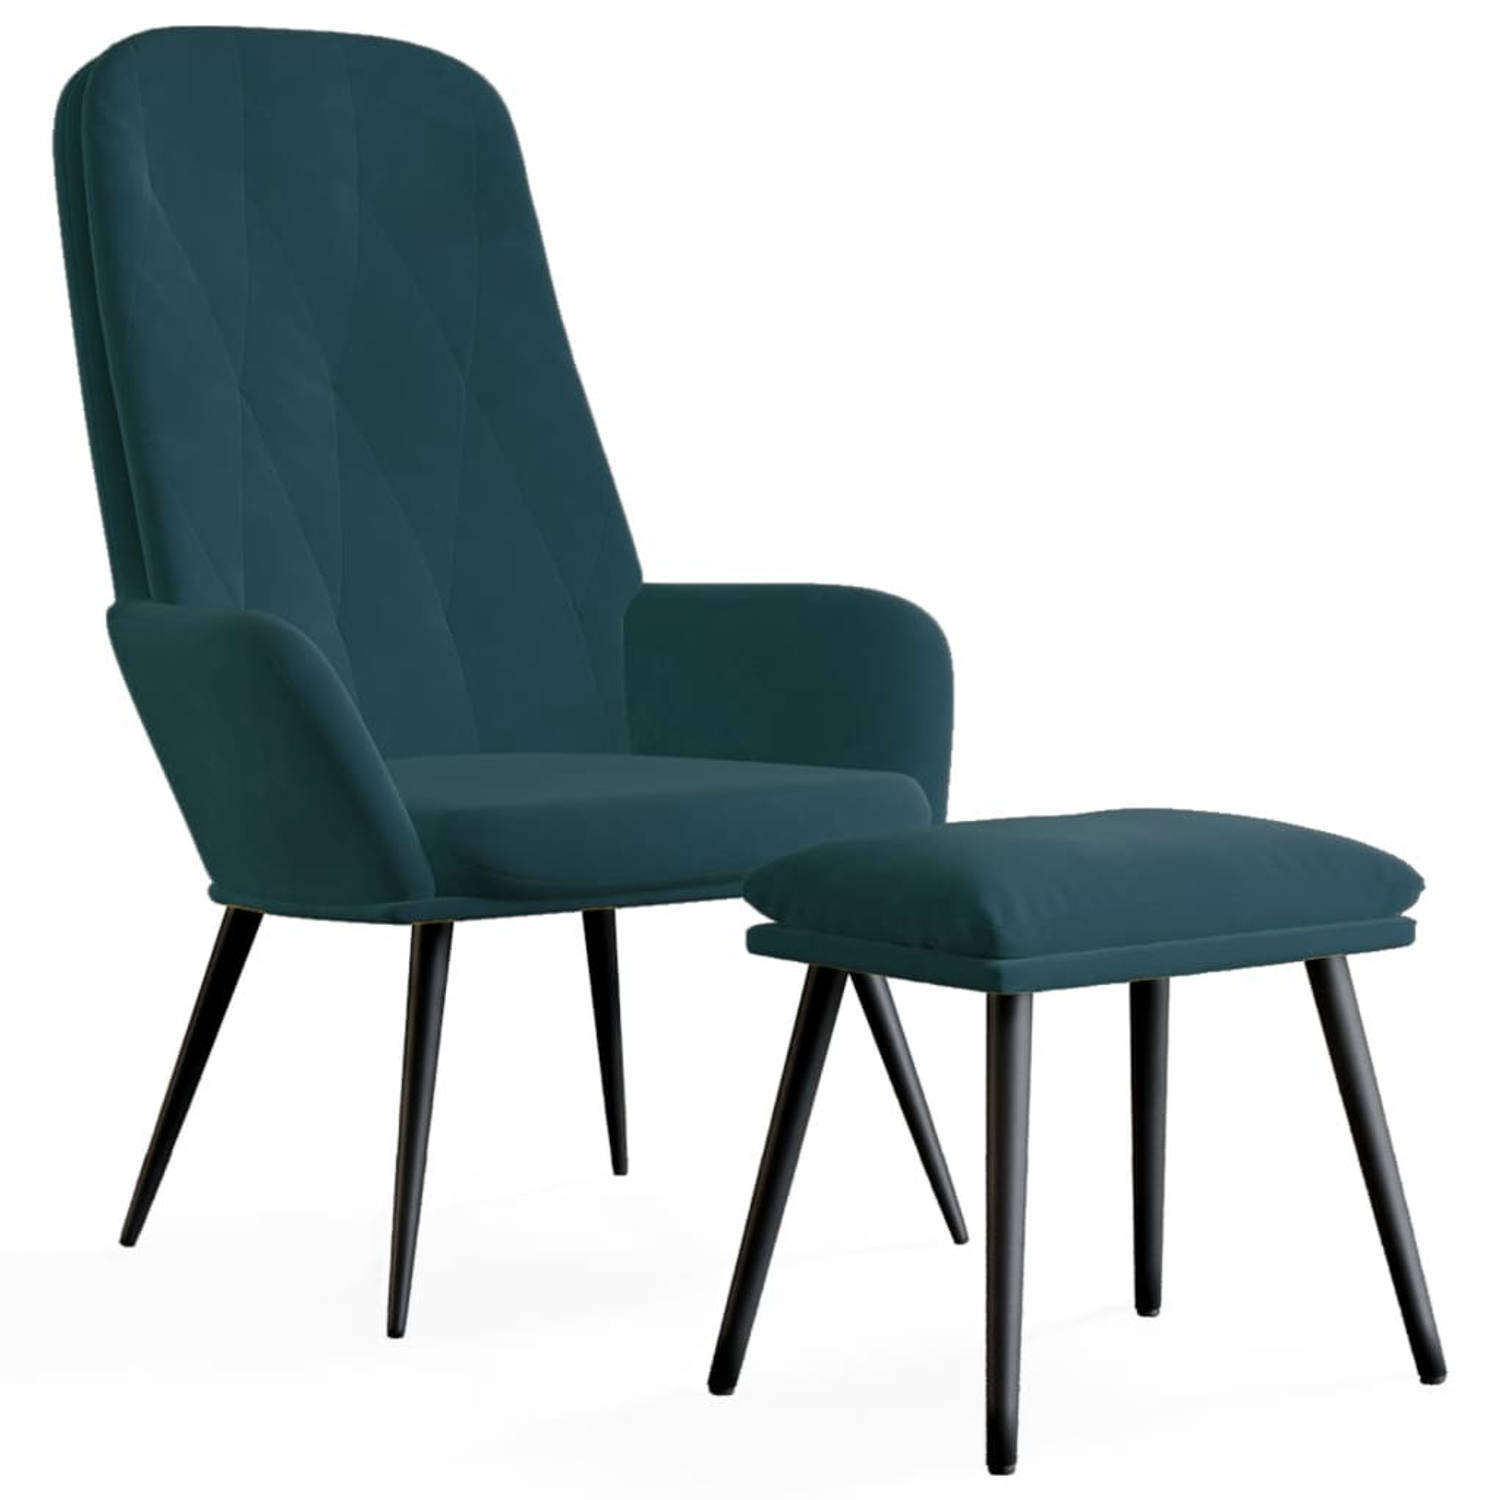 The Living Store Relaxstoel Blauw - 70 x 77 x 98 cm - Zacht fluweel - Stevig frame - Extra comfort - Trendy ontwerp - Incl - voetenbank